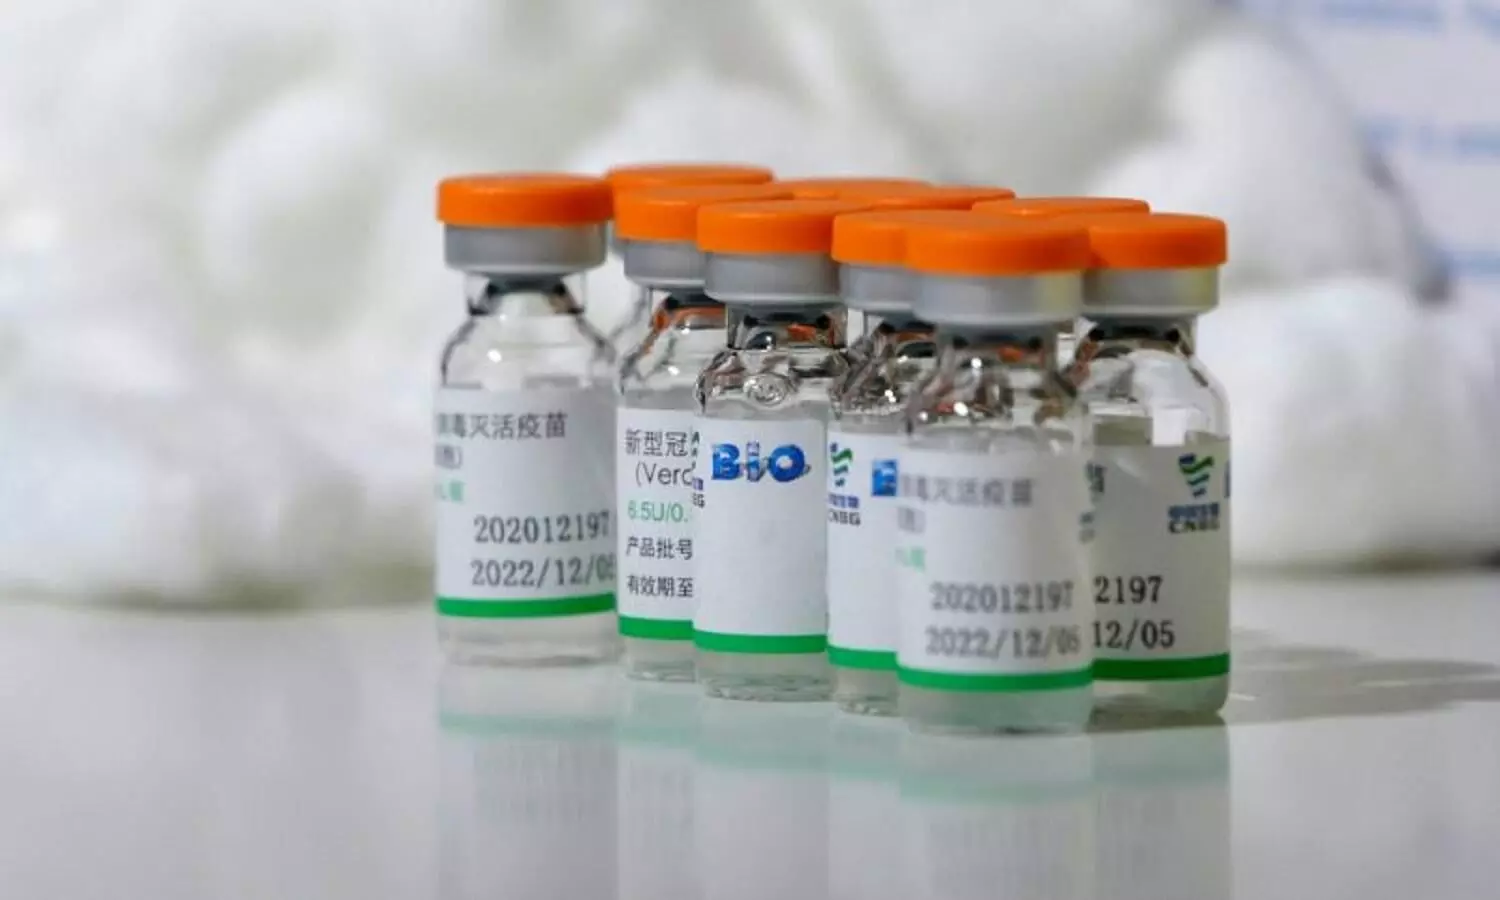 डब्लूएचओ से चीन की दो वैक्सीनों को मंजूरी मिली हुई है